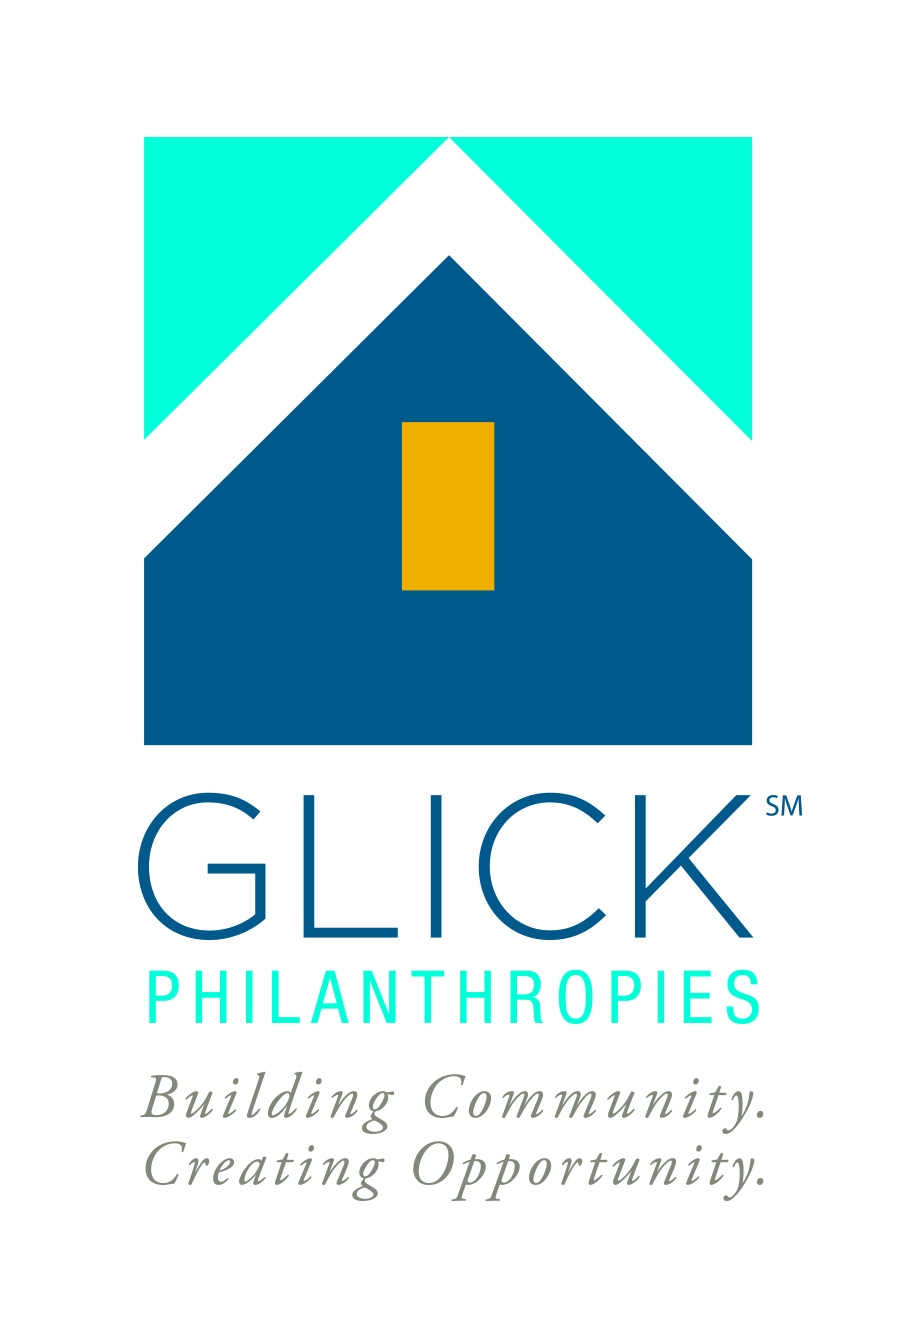 H. Glick Philanthropies (Mission)